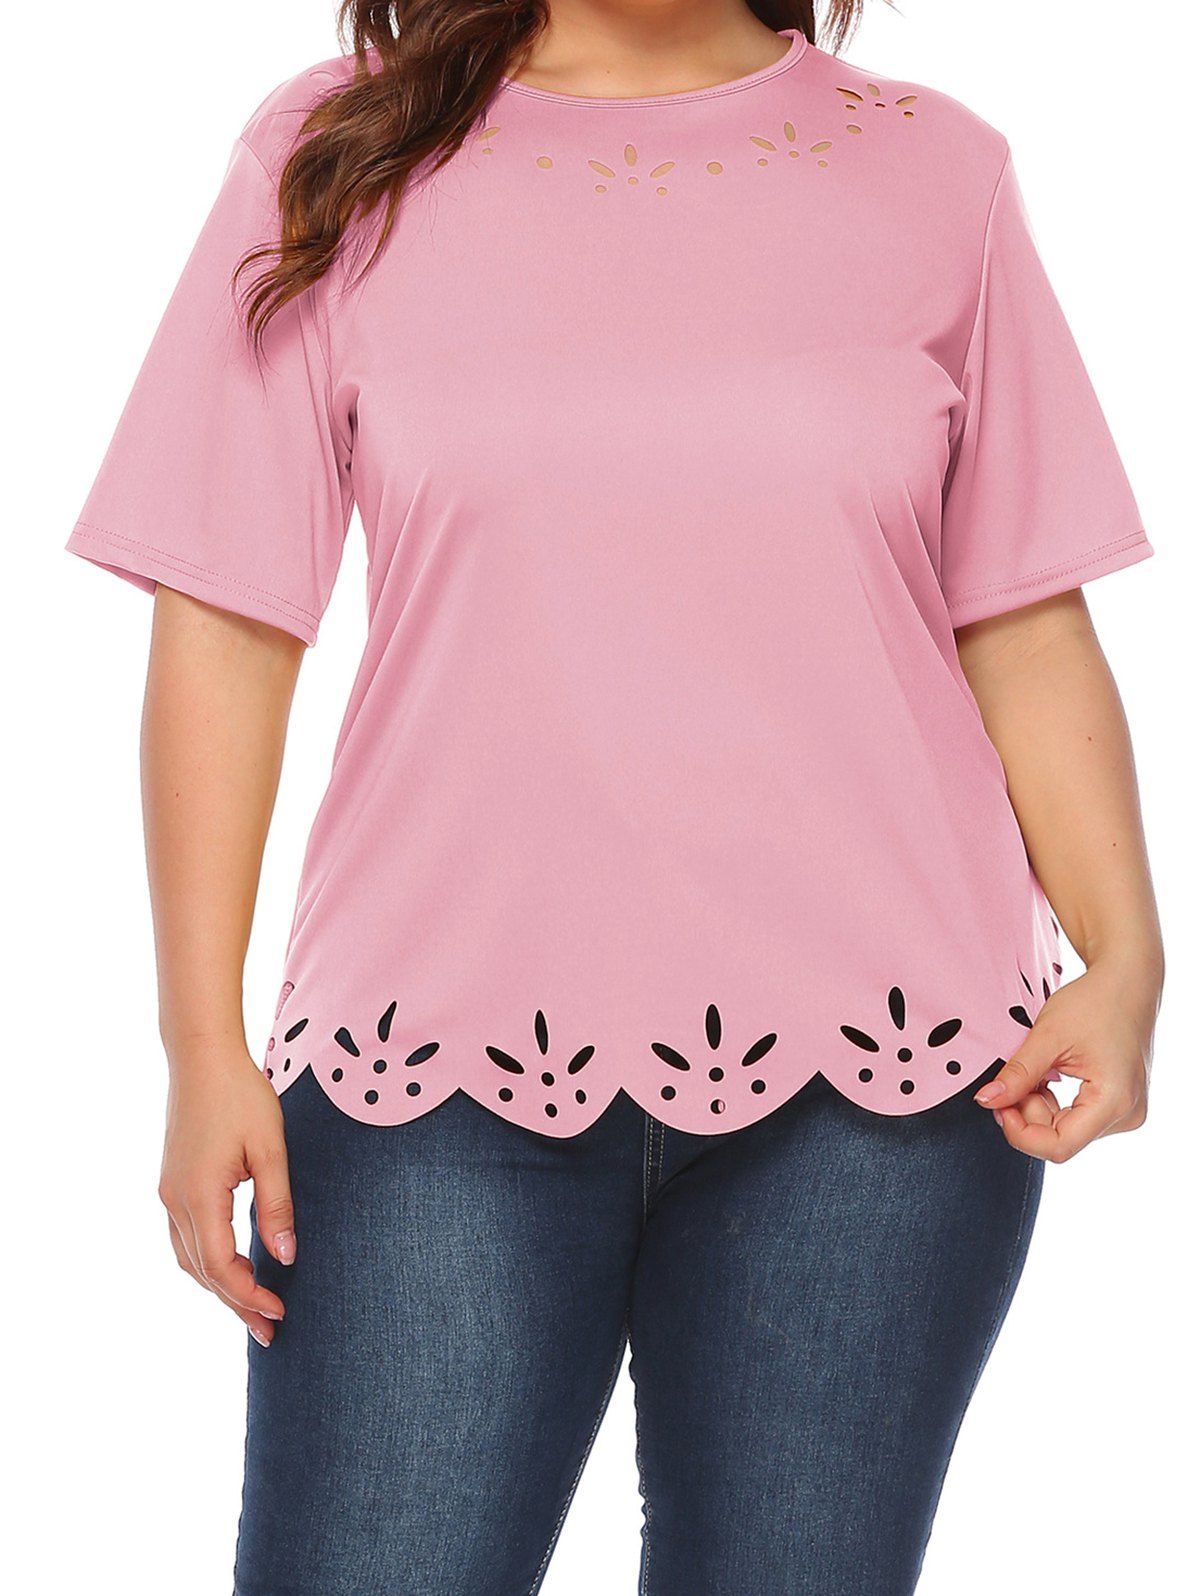 T-shirt Décontracté Festonné Découpé en Couleur Unie de Grande Taille - Rose clair 3XL